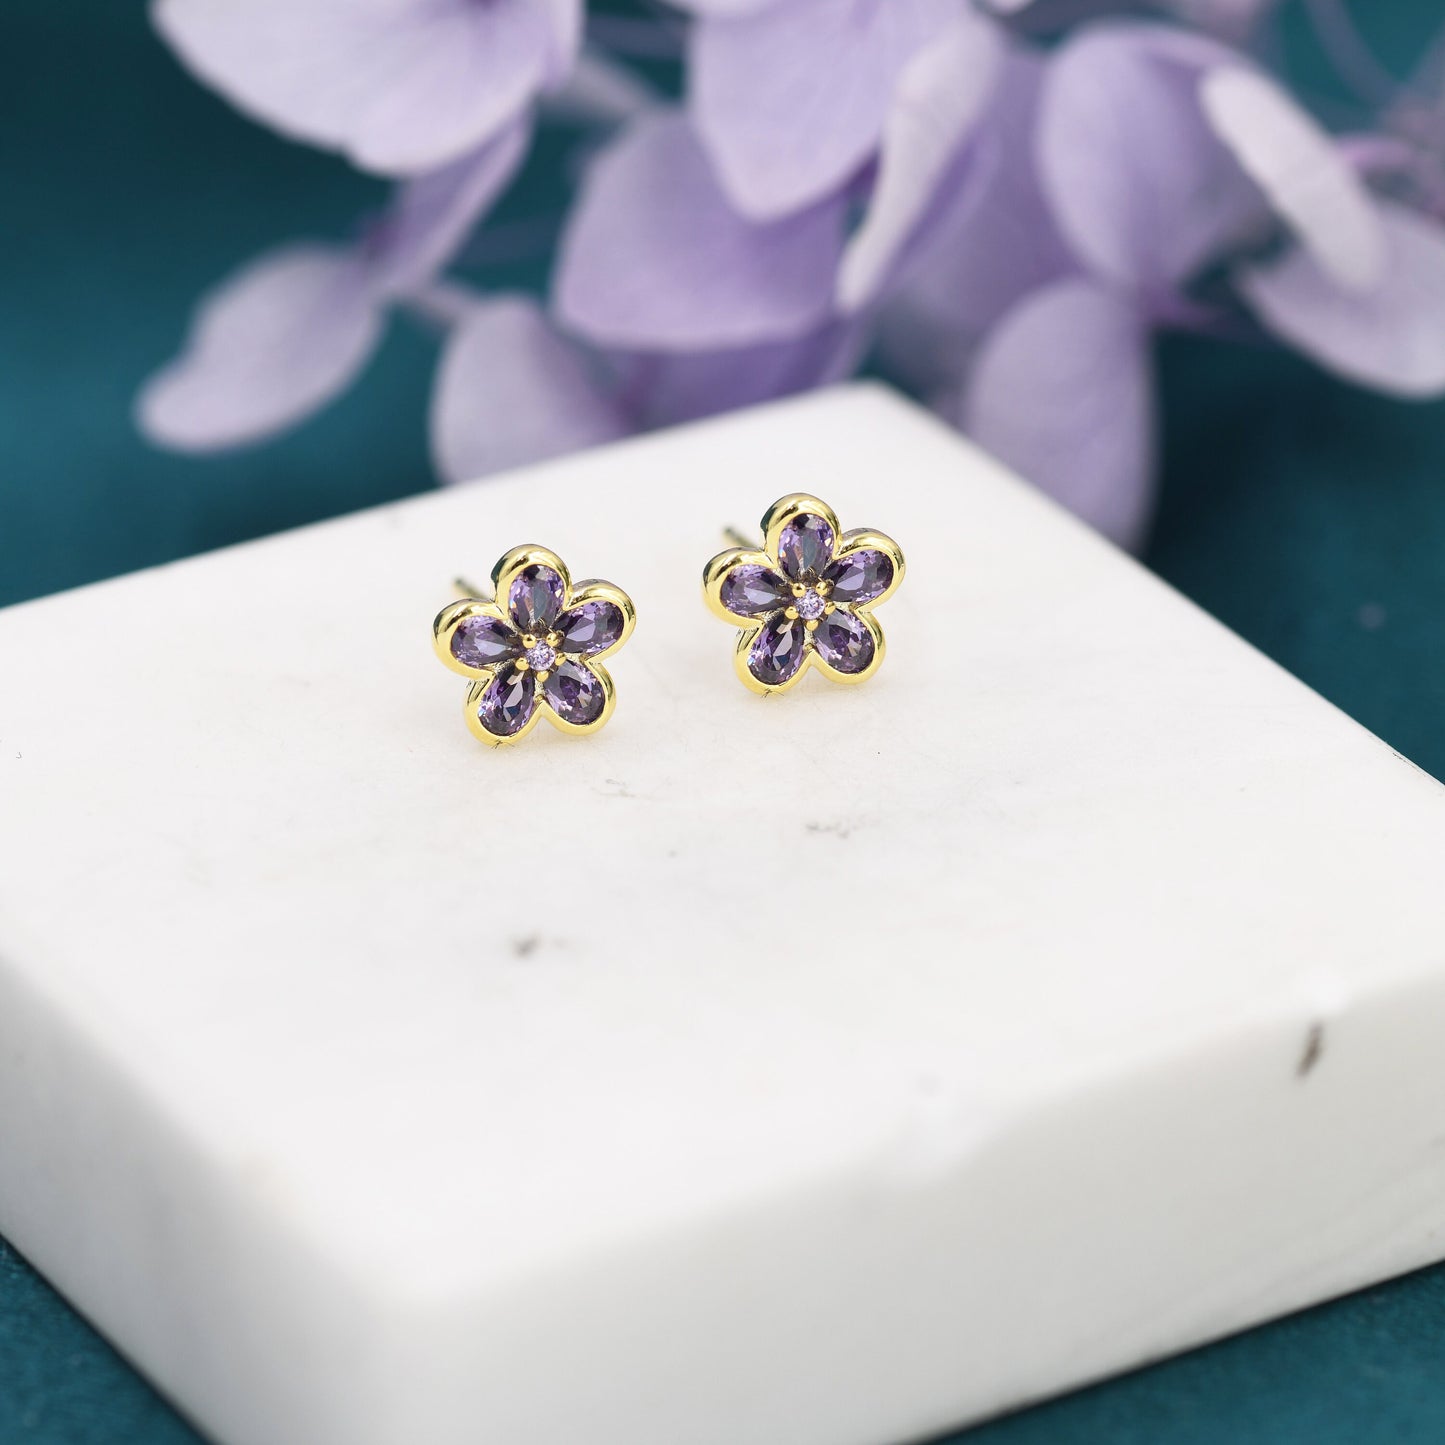 Amethyst Purple Flower CZ Stud Earrings in Sterling Silver, Forget Me Not Floral CZ Earrings, Silver or Gold, Flower CZ Earrings